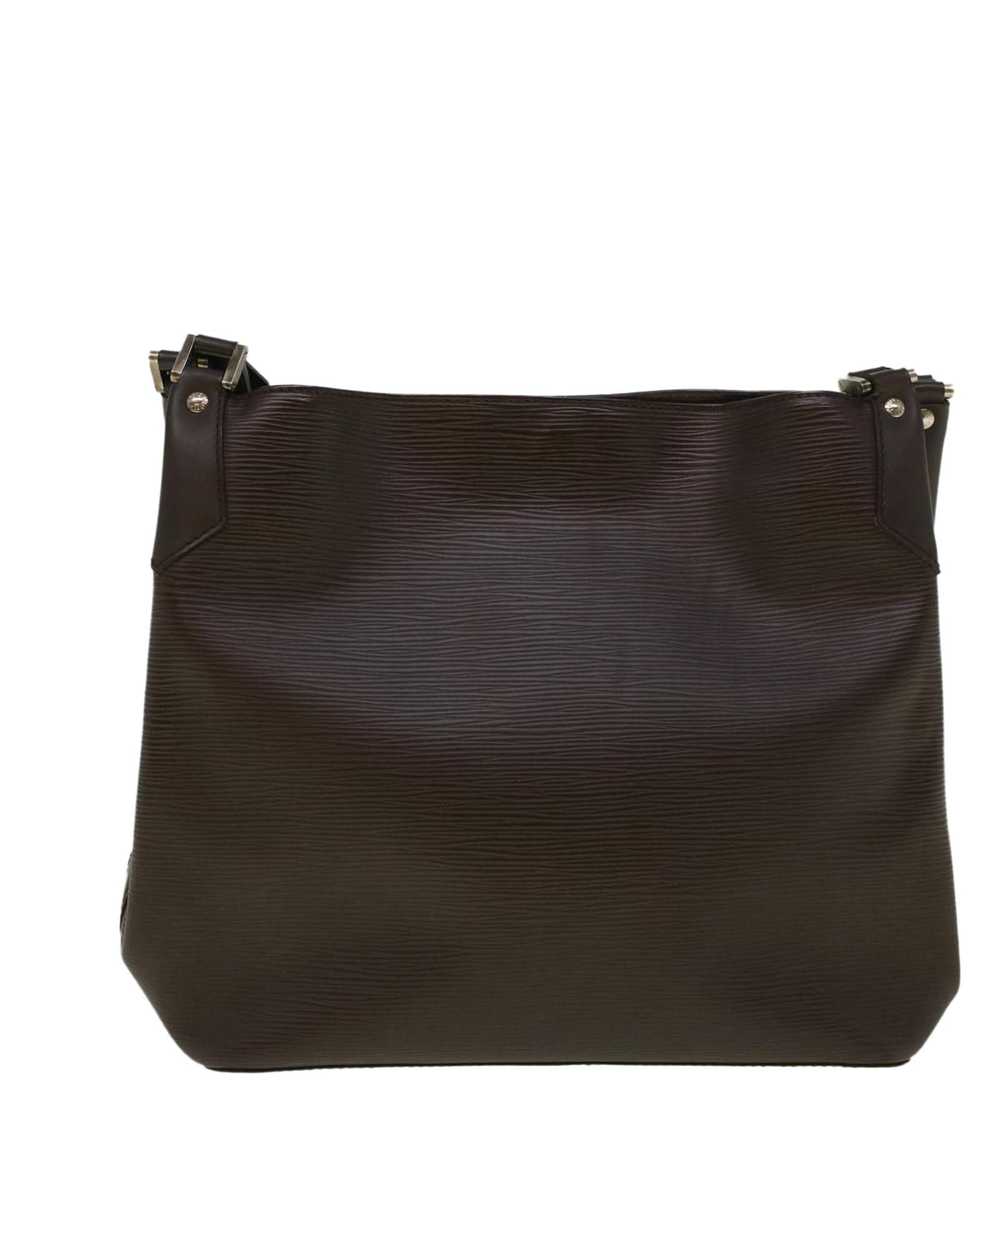 Louis Vuitton Elegant Epi Leather Shoulder Bag - image 3